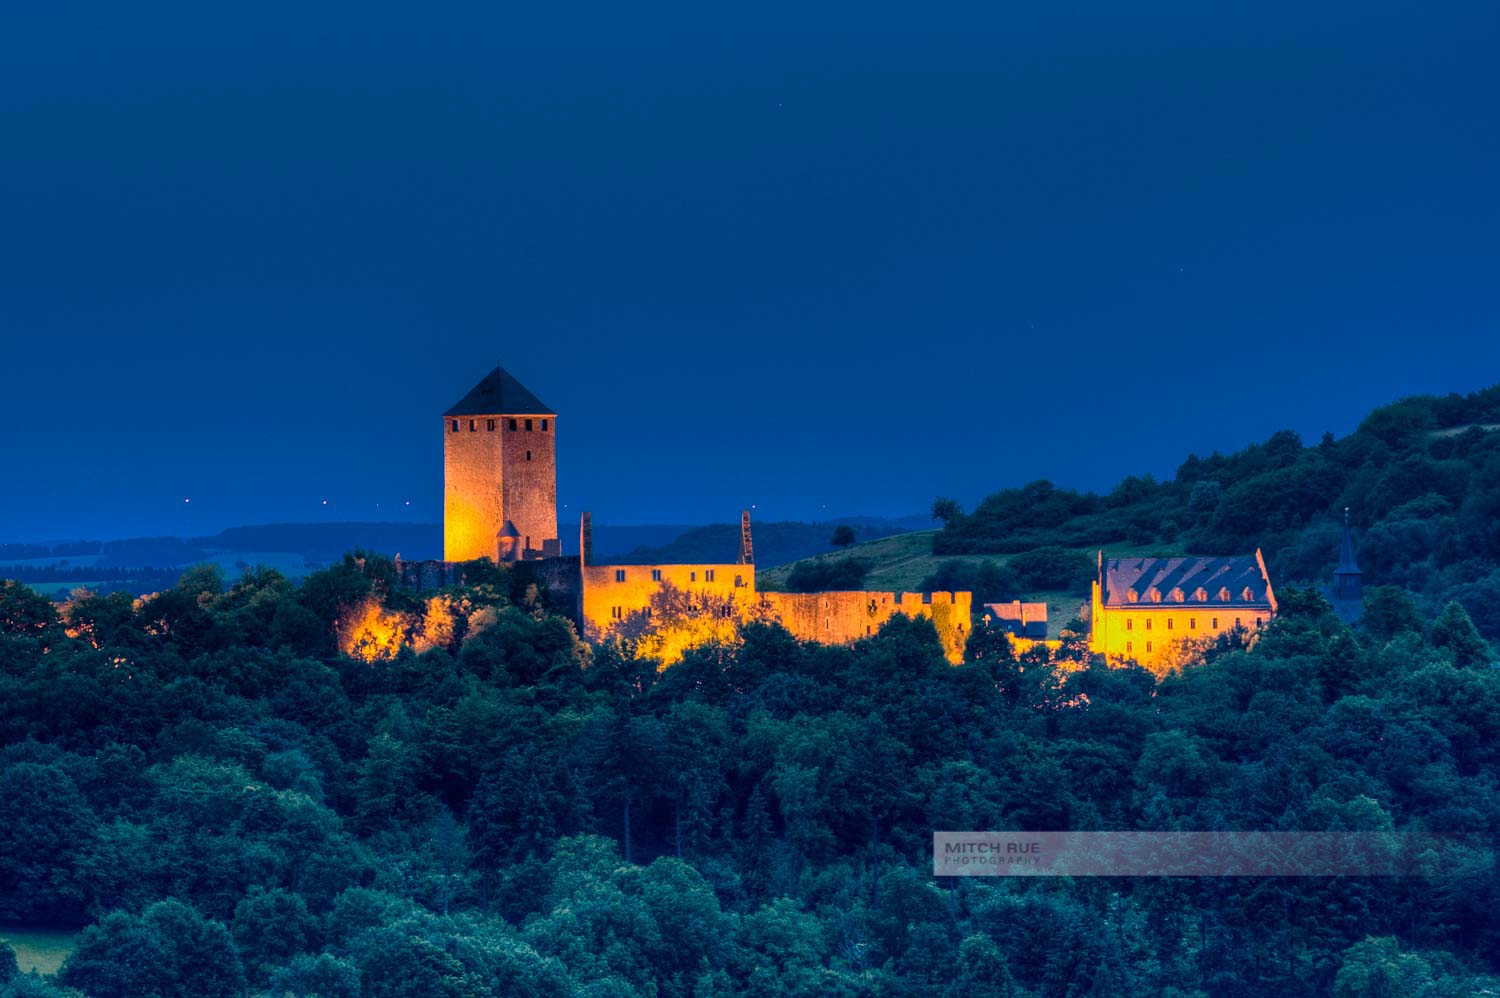 Blaue Stunde an der beleuchteten Burg Lichtenberg. Dunkle Bäume und dunkler Nachthimmel umgeben die Burg